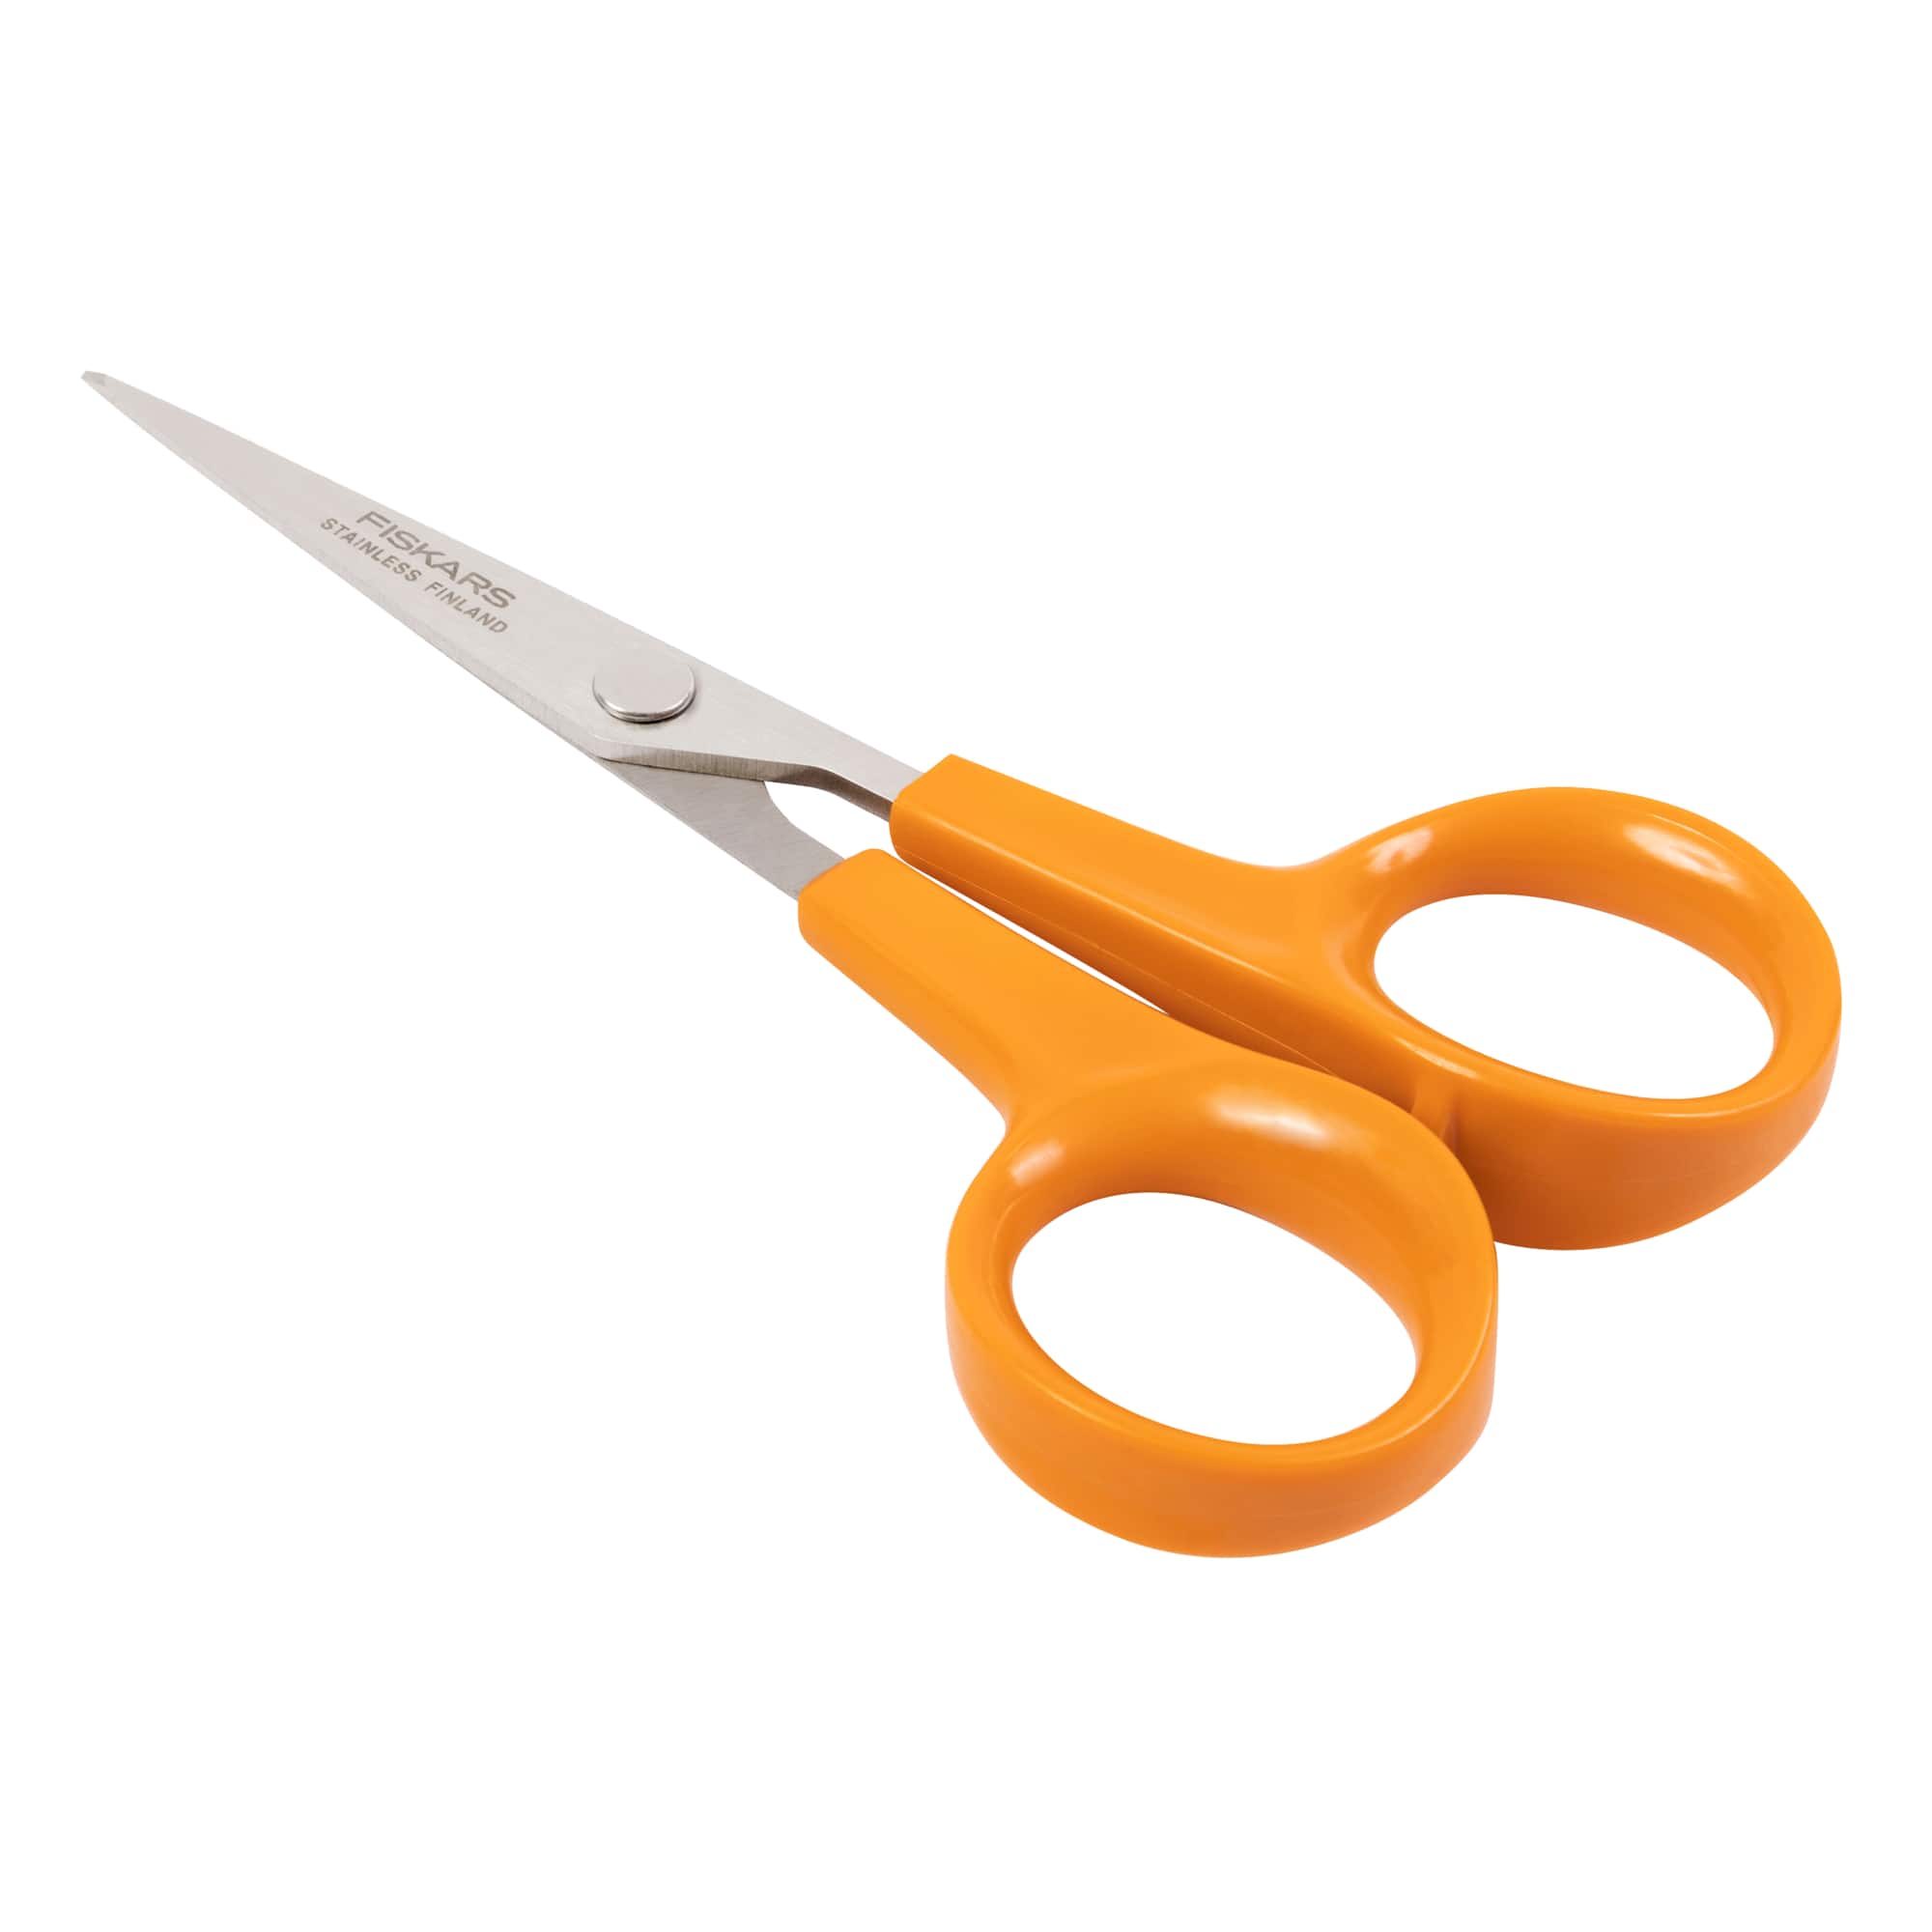 Fiskars&#xAE; Finnish No. 5 Stitcher Scissors